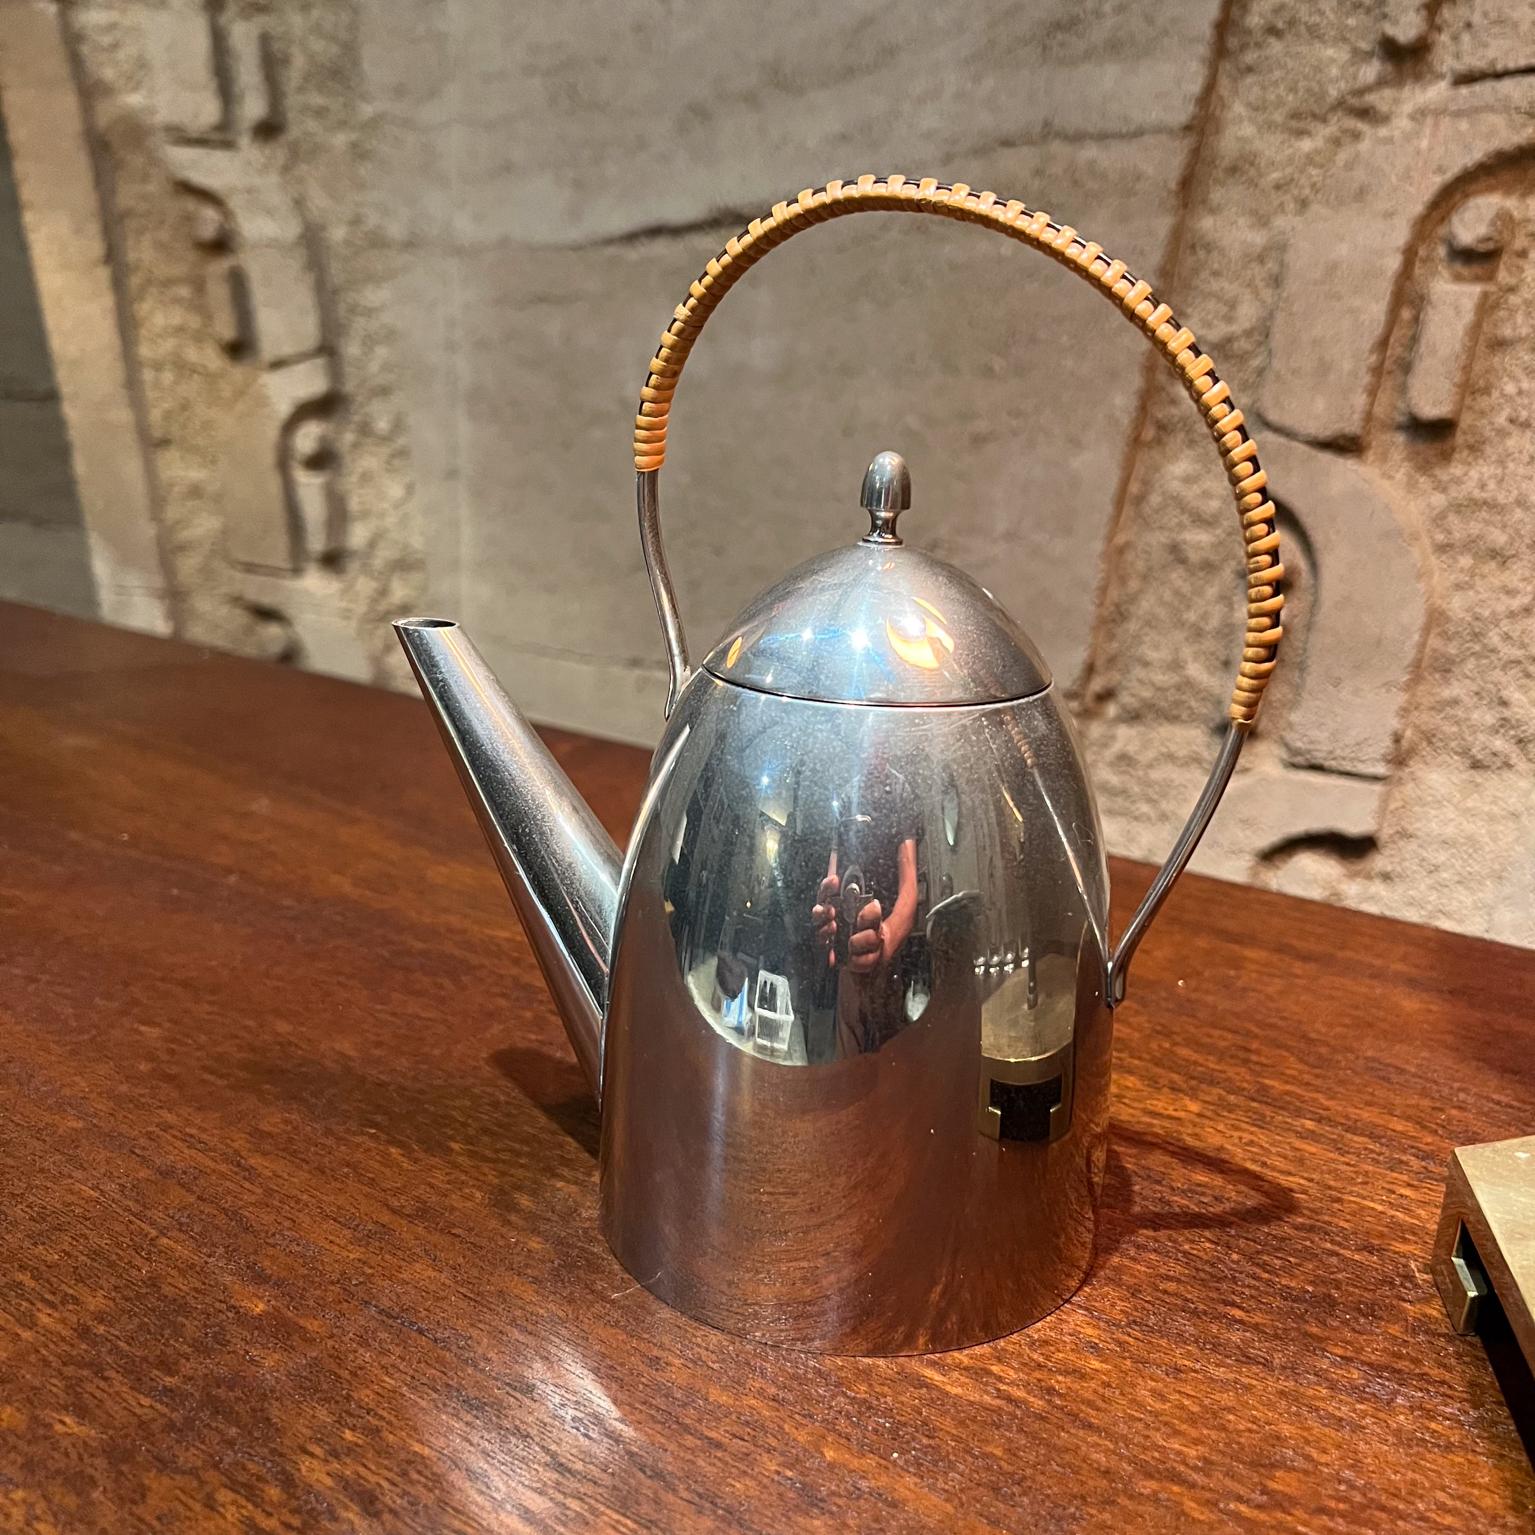 D & S Personal Tea Kettle Pot Stainless Steel. 
Le style de design moderne propre au Bauhaus de Peter Behrens
Poignée avec enroulement de canne
Vintage très propre et en bon état.  
Estampillé en bas. 
Voir toutes les images présentées.